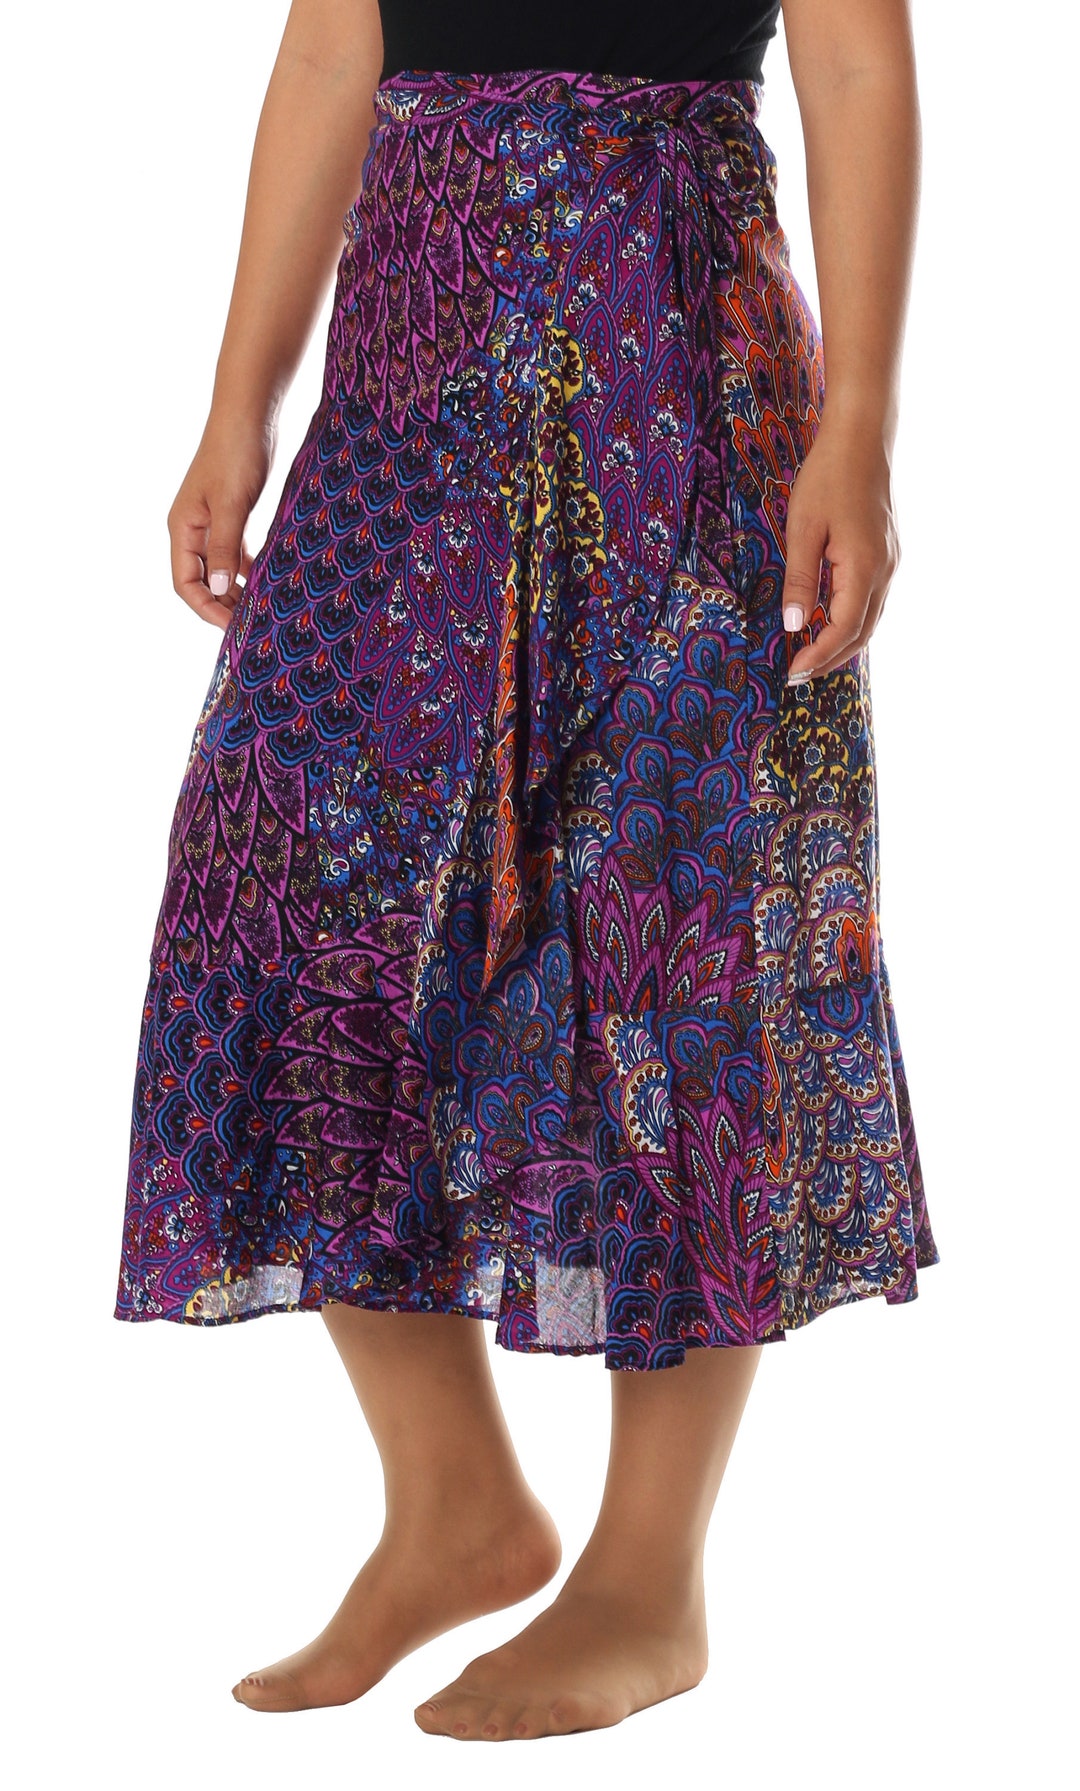 BOHO MIDI SKIRT Women Wrap Skirt Knee Length Gypsy Bohemian Summer High ...